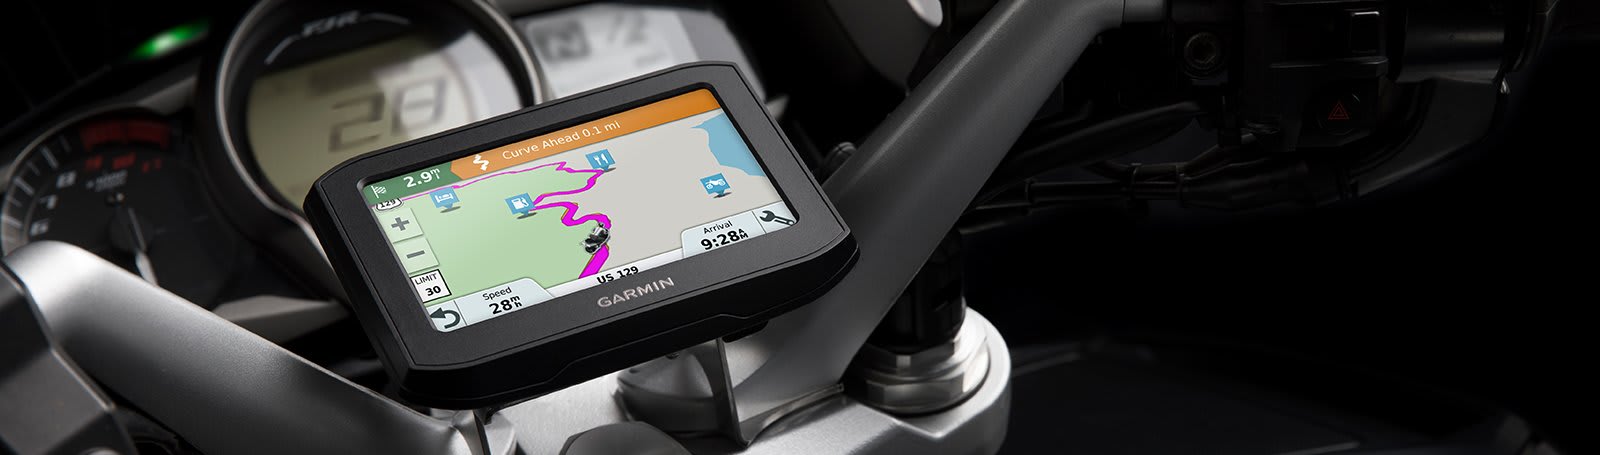 ▷ Garmin GPS Navegador para Motocicleta Pantalla 4.3 Zumo 396 LMT-S ©